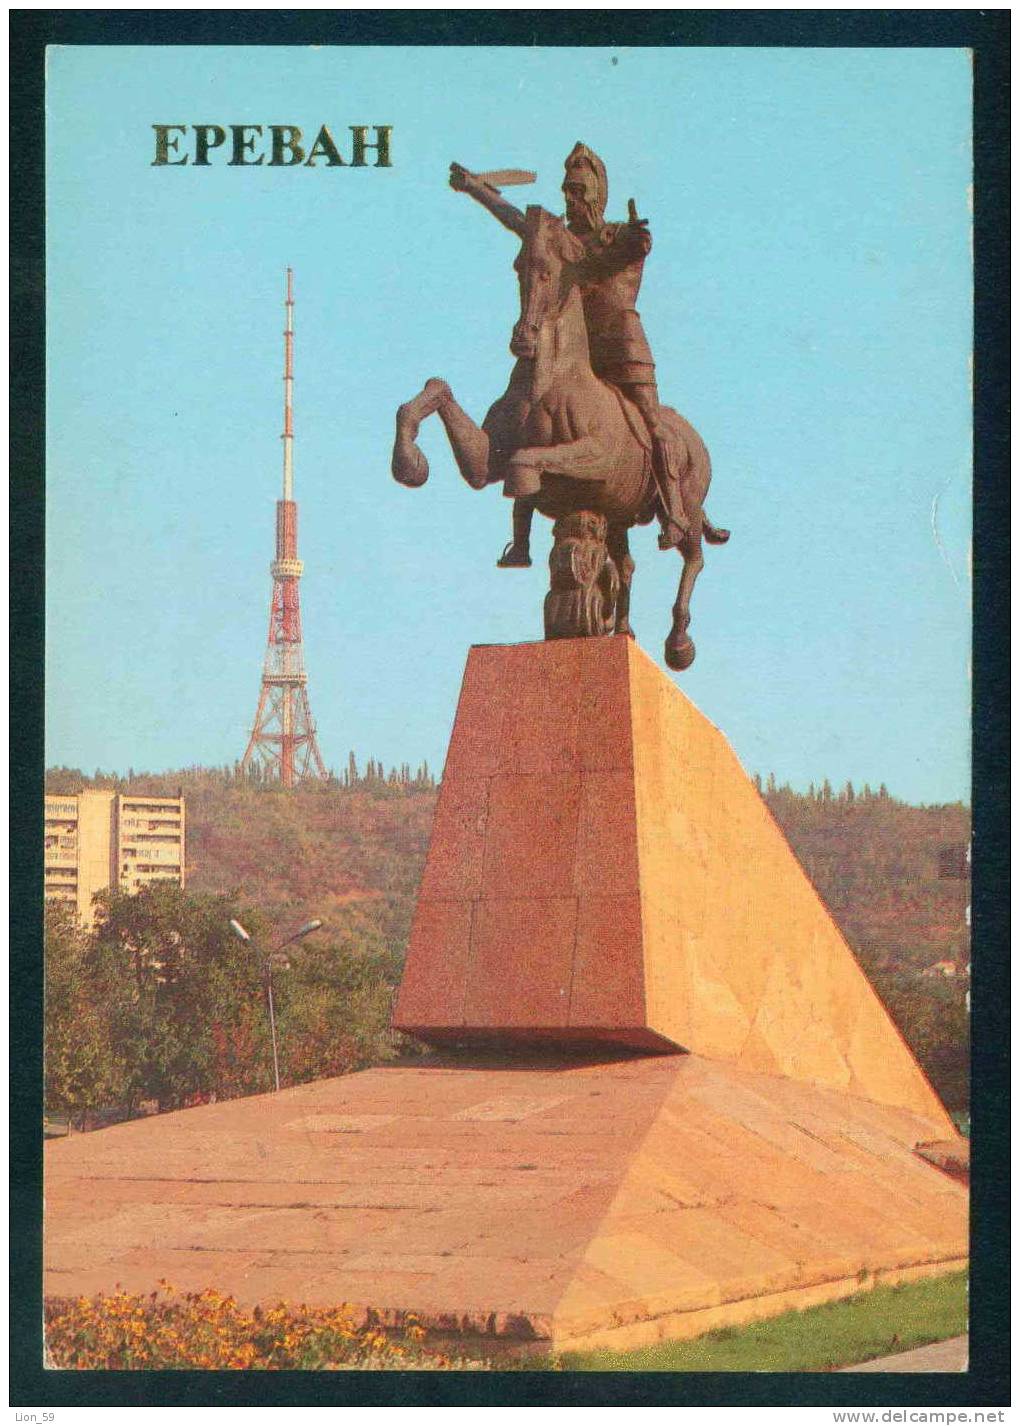 Yerevan / Erevan - TV TOWER , MONUMENT TO VARDAN MAMIKONIAN - Armenia Armenie 108310 - Armenia